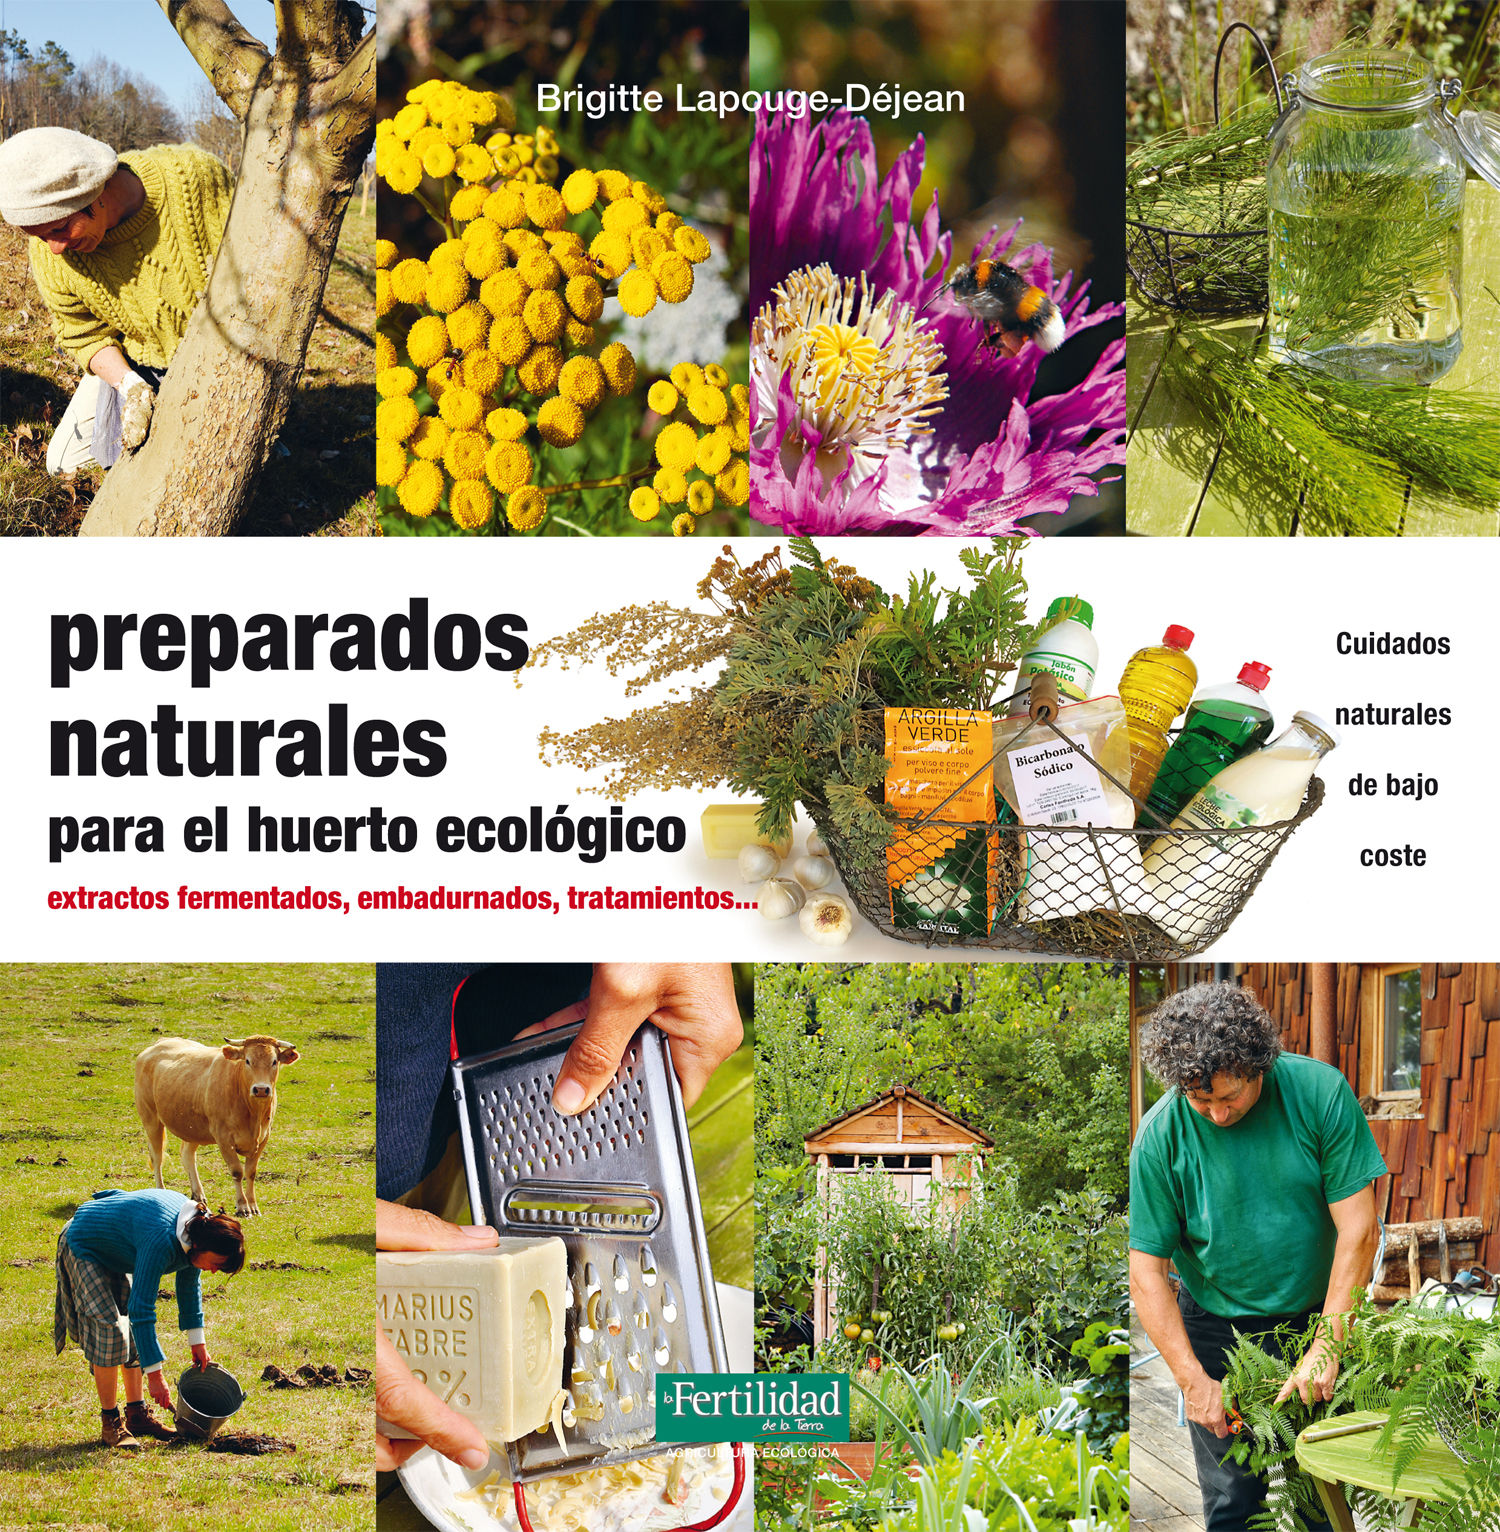 PREPARADOS-NATURALES-PARA-EL-HUERTO-ECOLOGICO.jpg